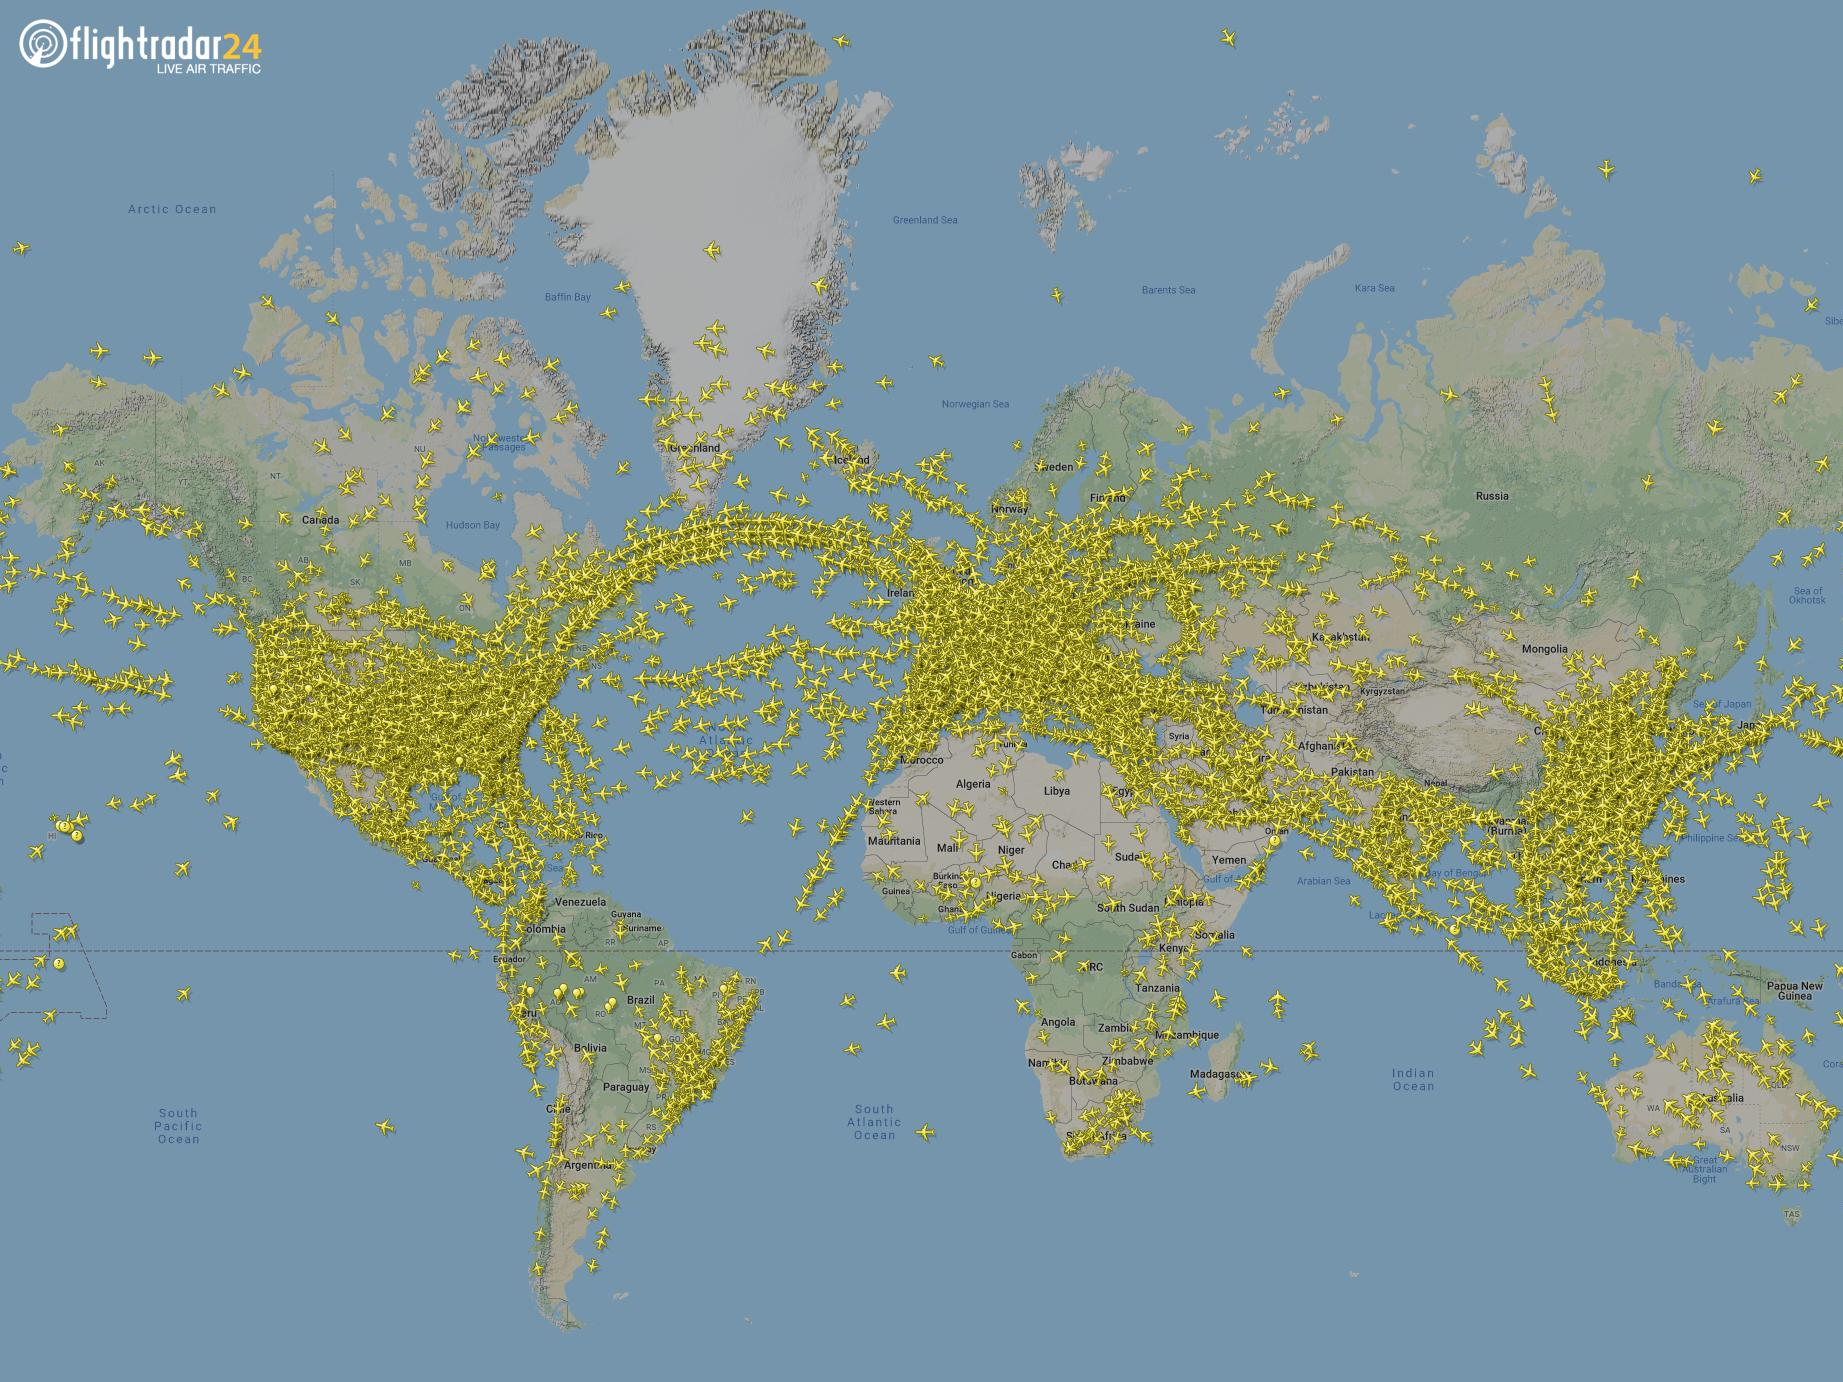 7月24日、Flightradar24は22万5000以上のフライトを記録した。